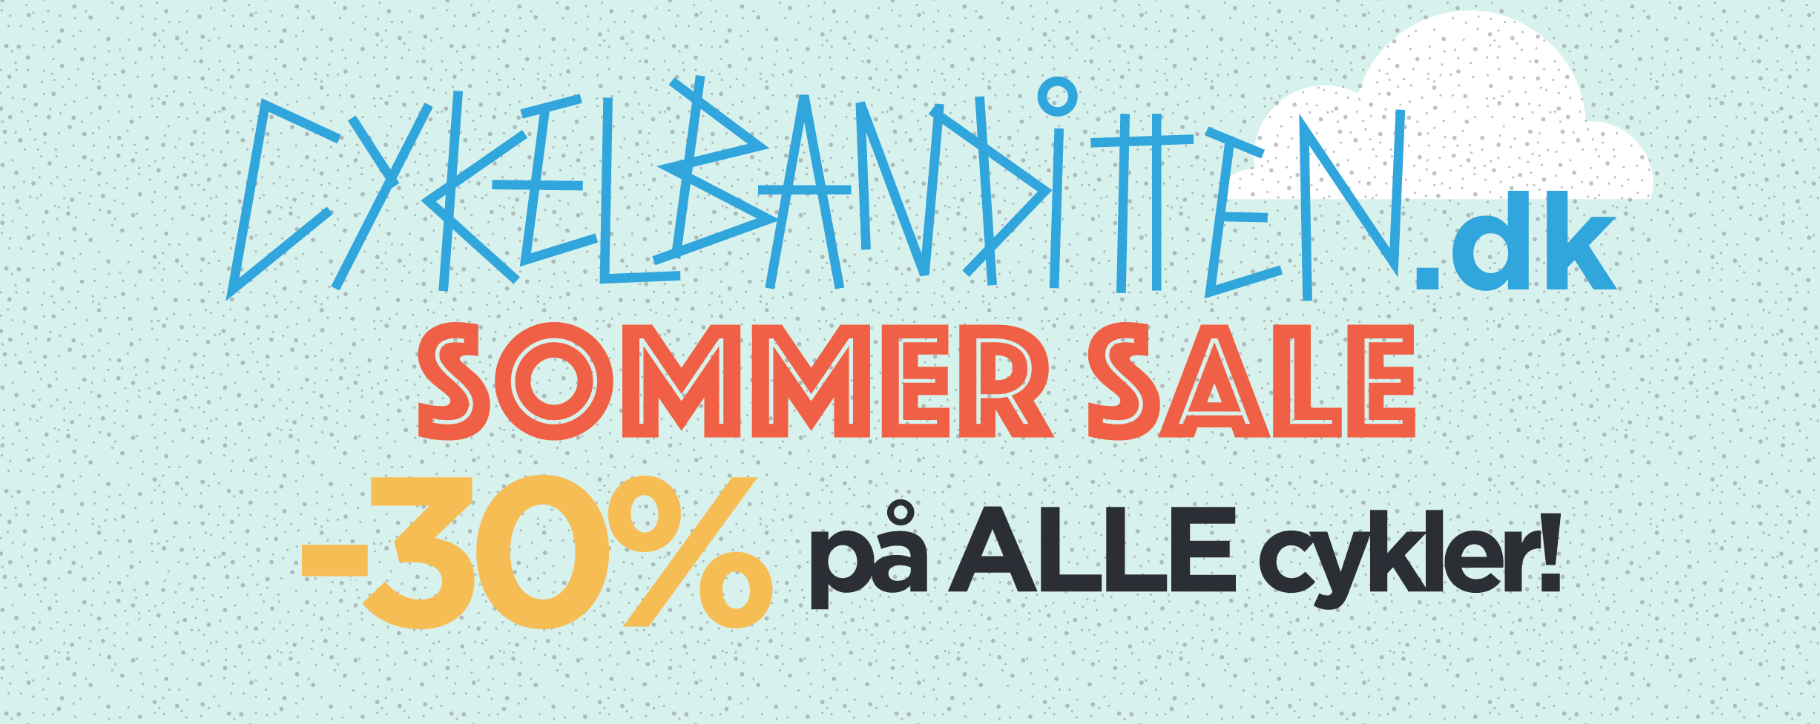 Sommer Sale: 30% rabat på ALLE cykler netop nu!